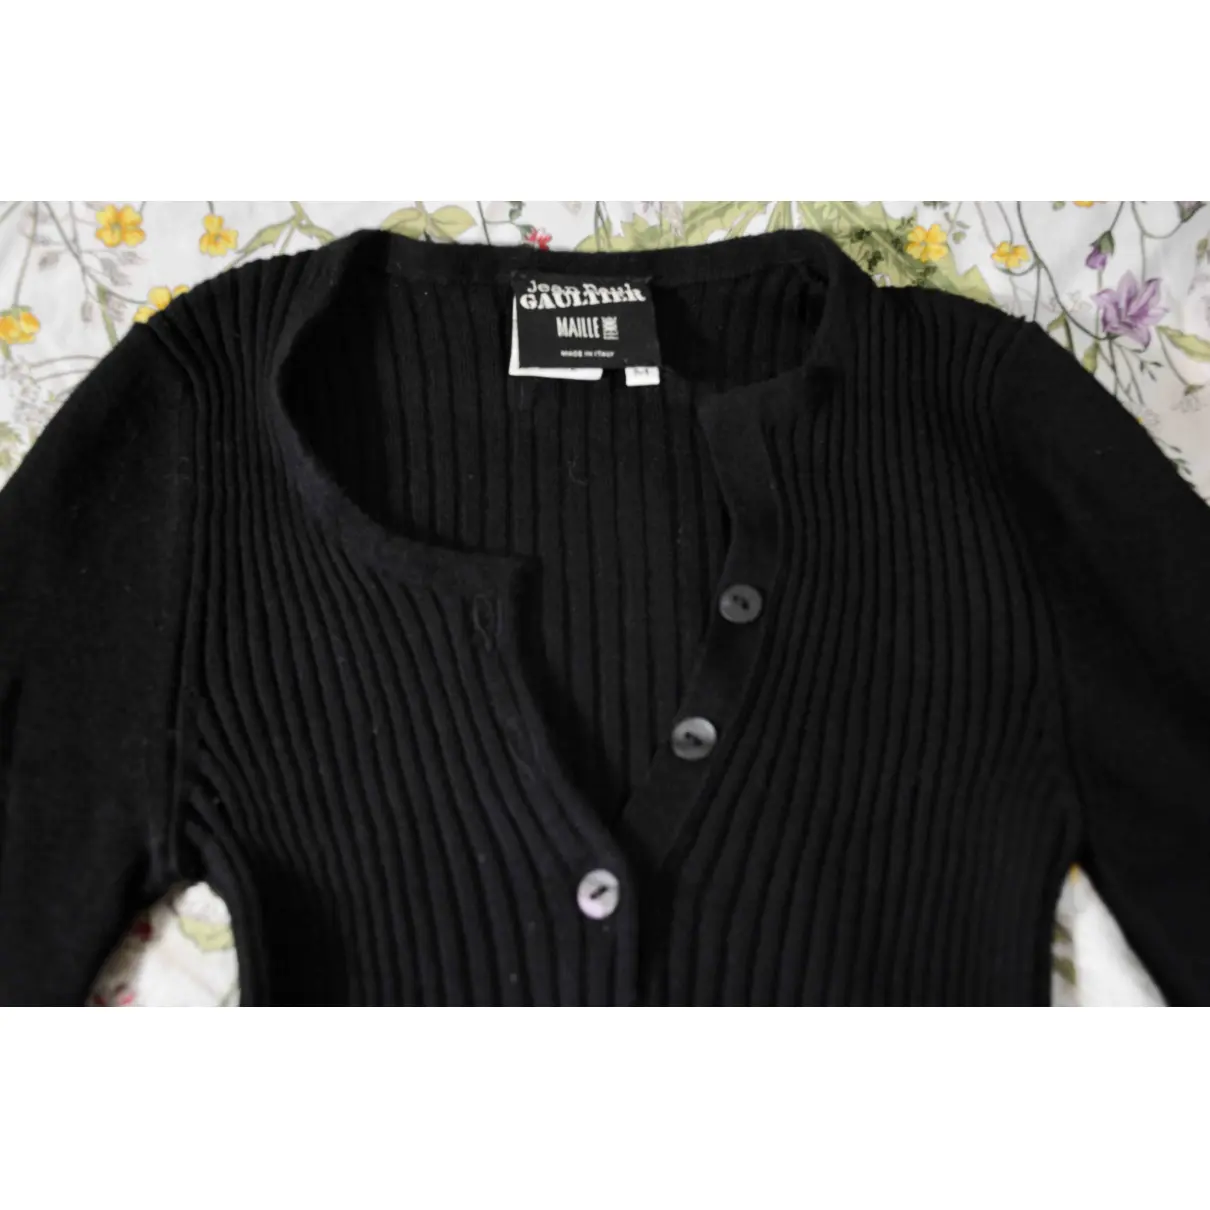 Buy Jean Paul Gaultier Black Cotton Top online